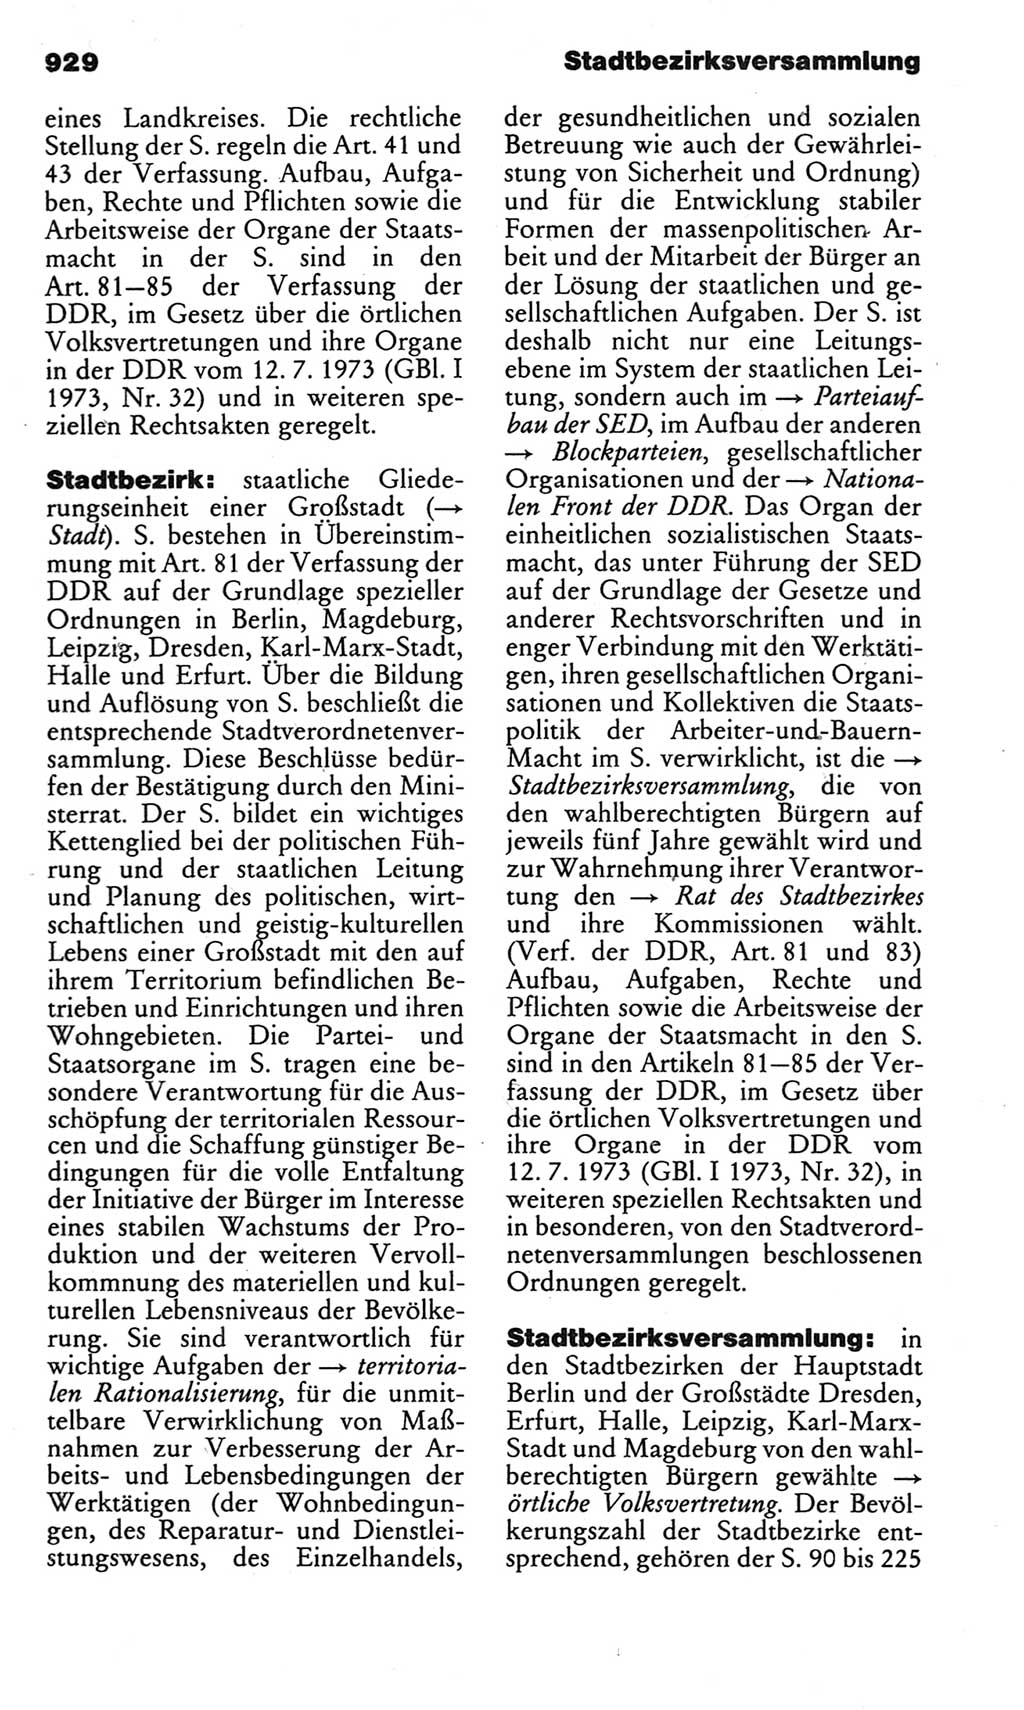 Kleines politisches Wörterbuch [Deutsche Demokratische Republik (DDR)] 1983, Seite 929 (Kl. pol. Wb. DDR 1983, S. 929)